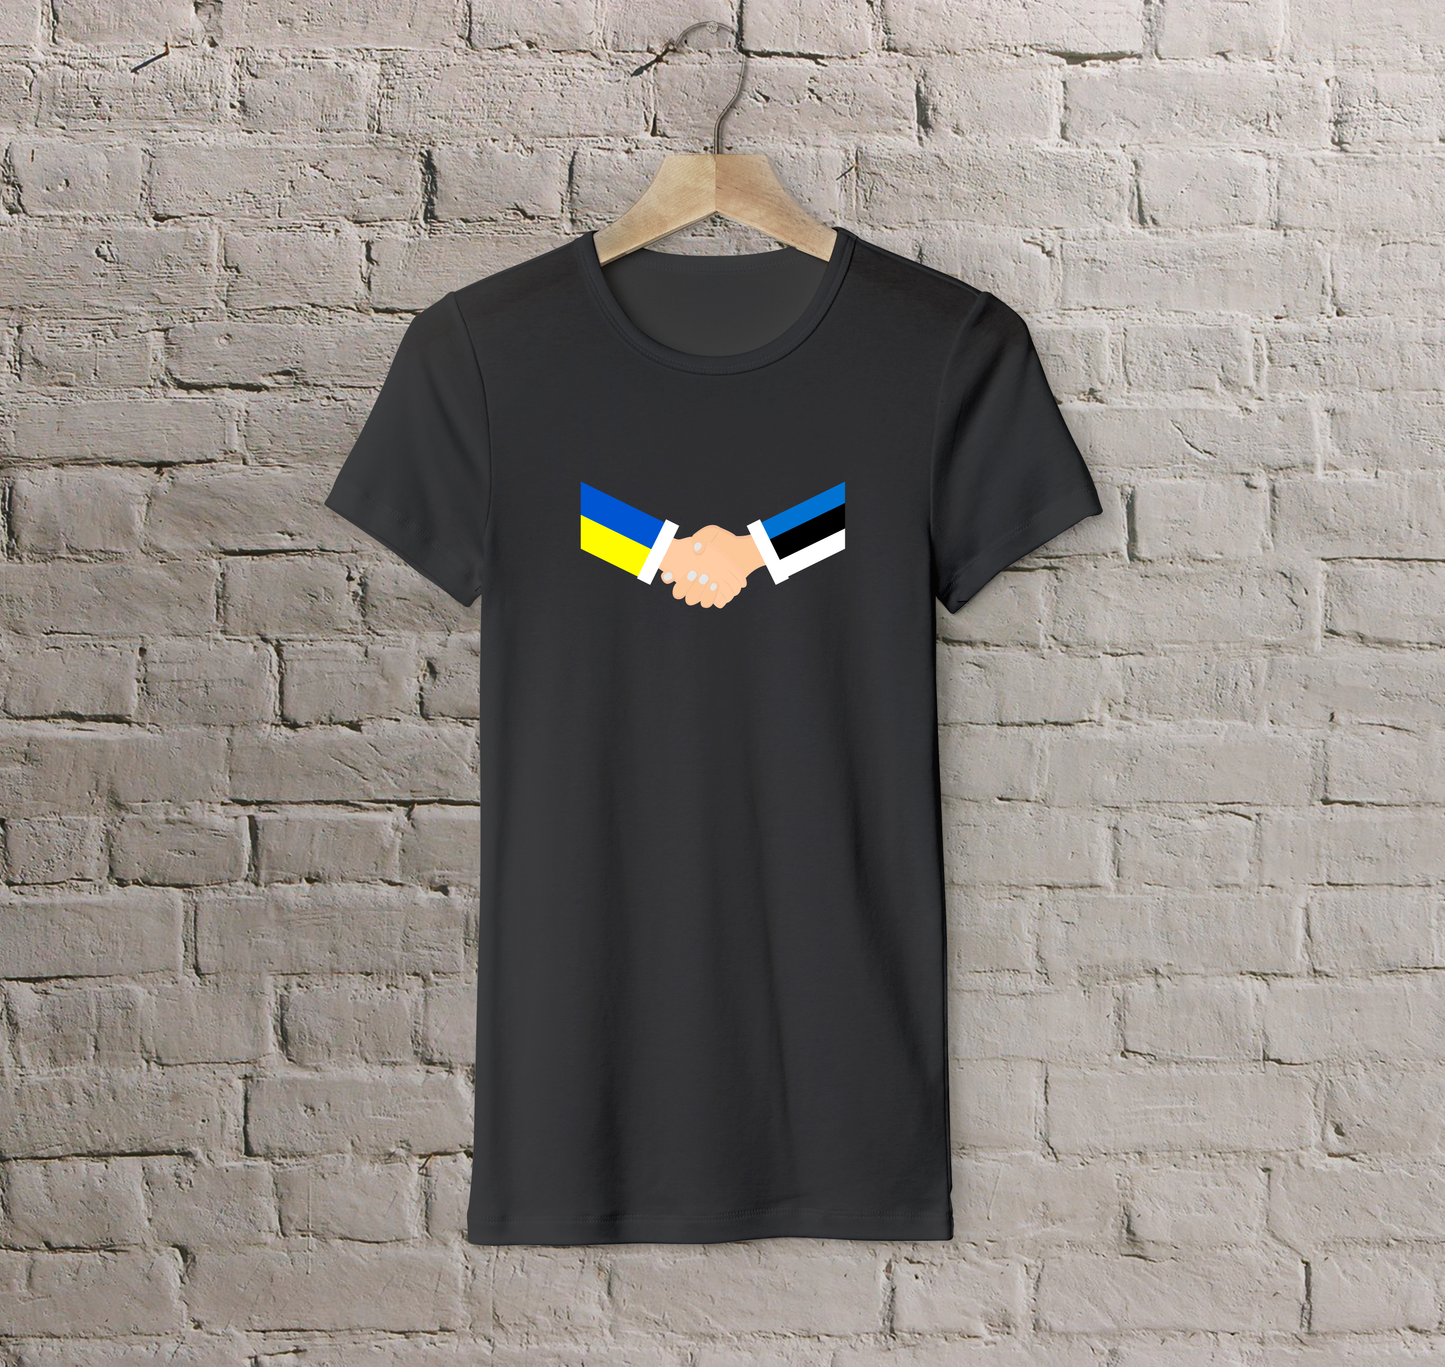 T-shirt Estonia + Ukraine (handshake)